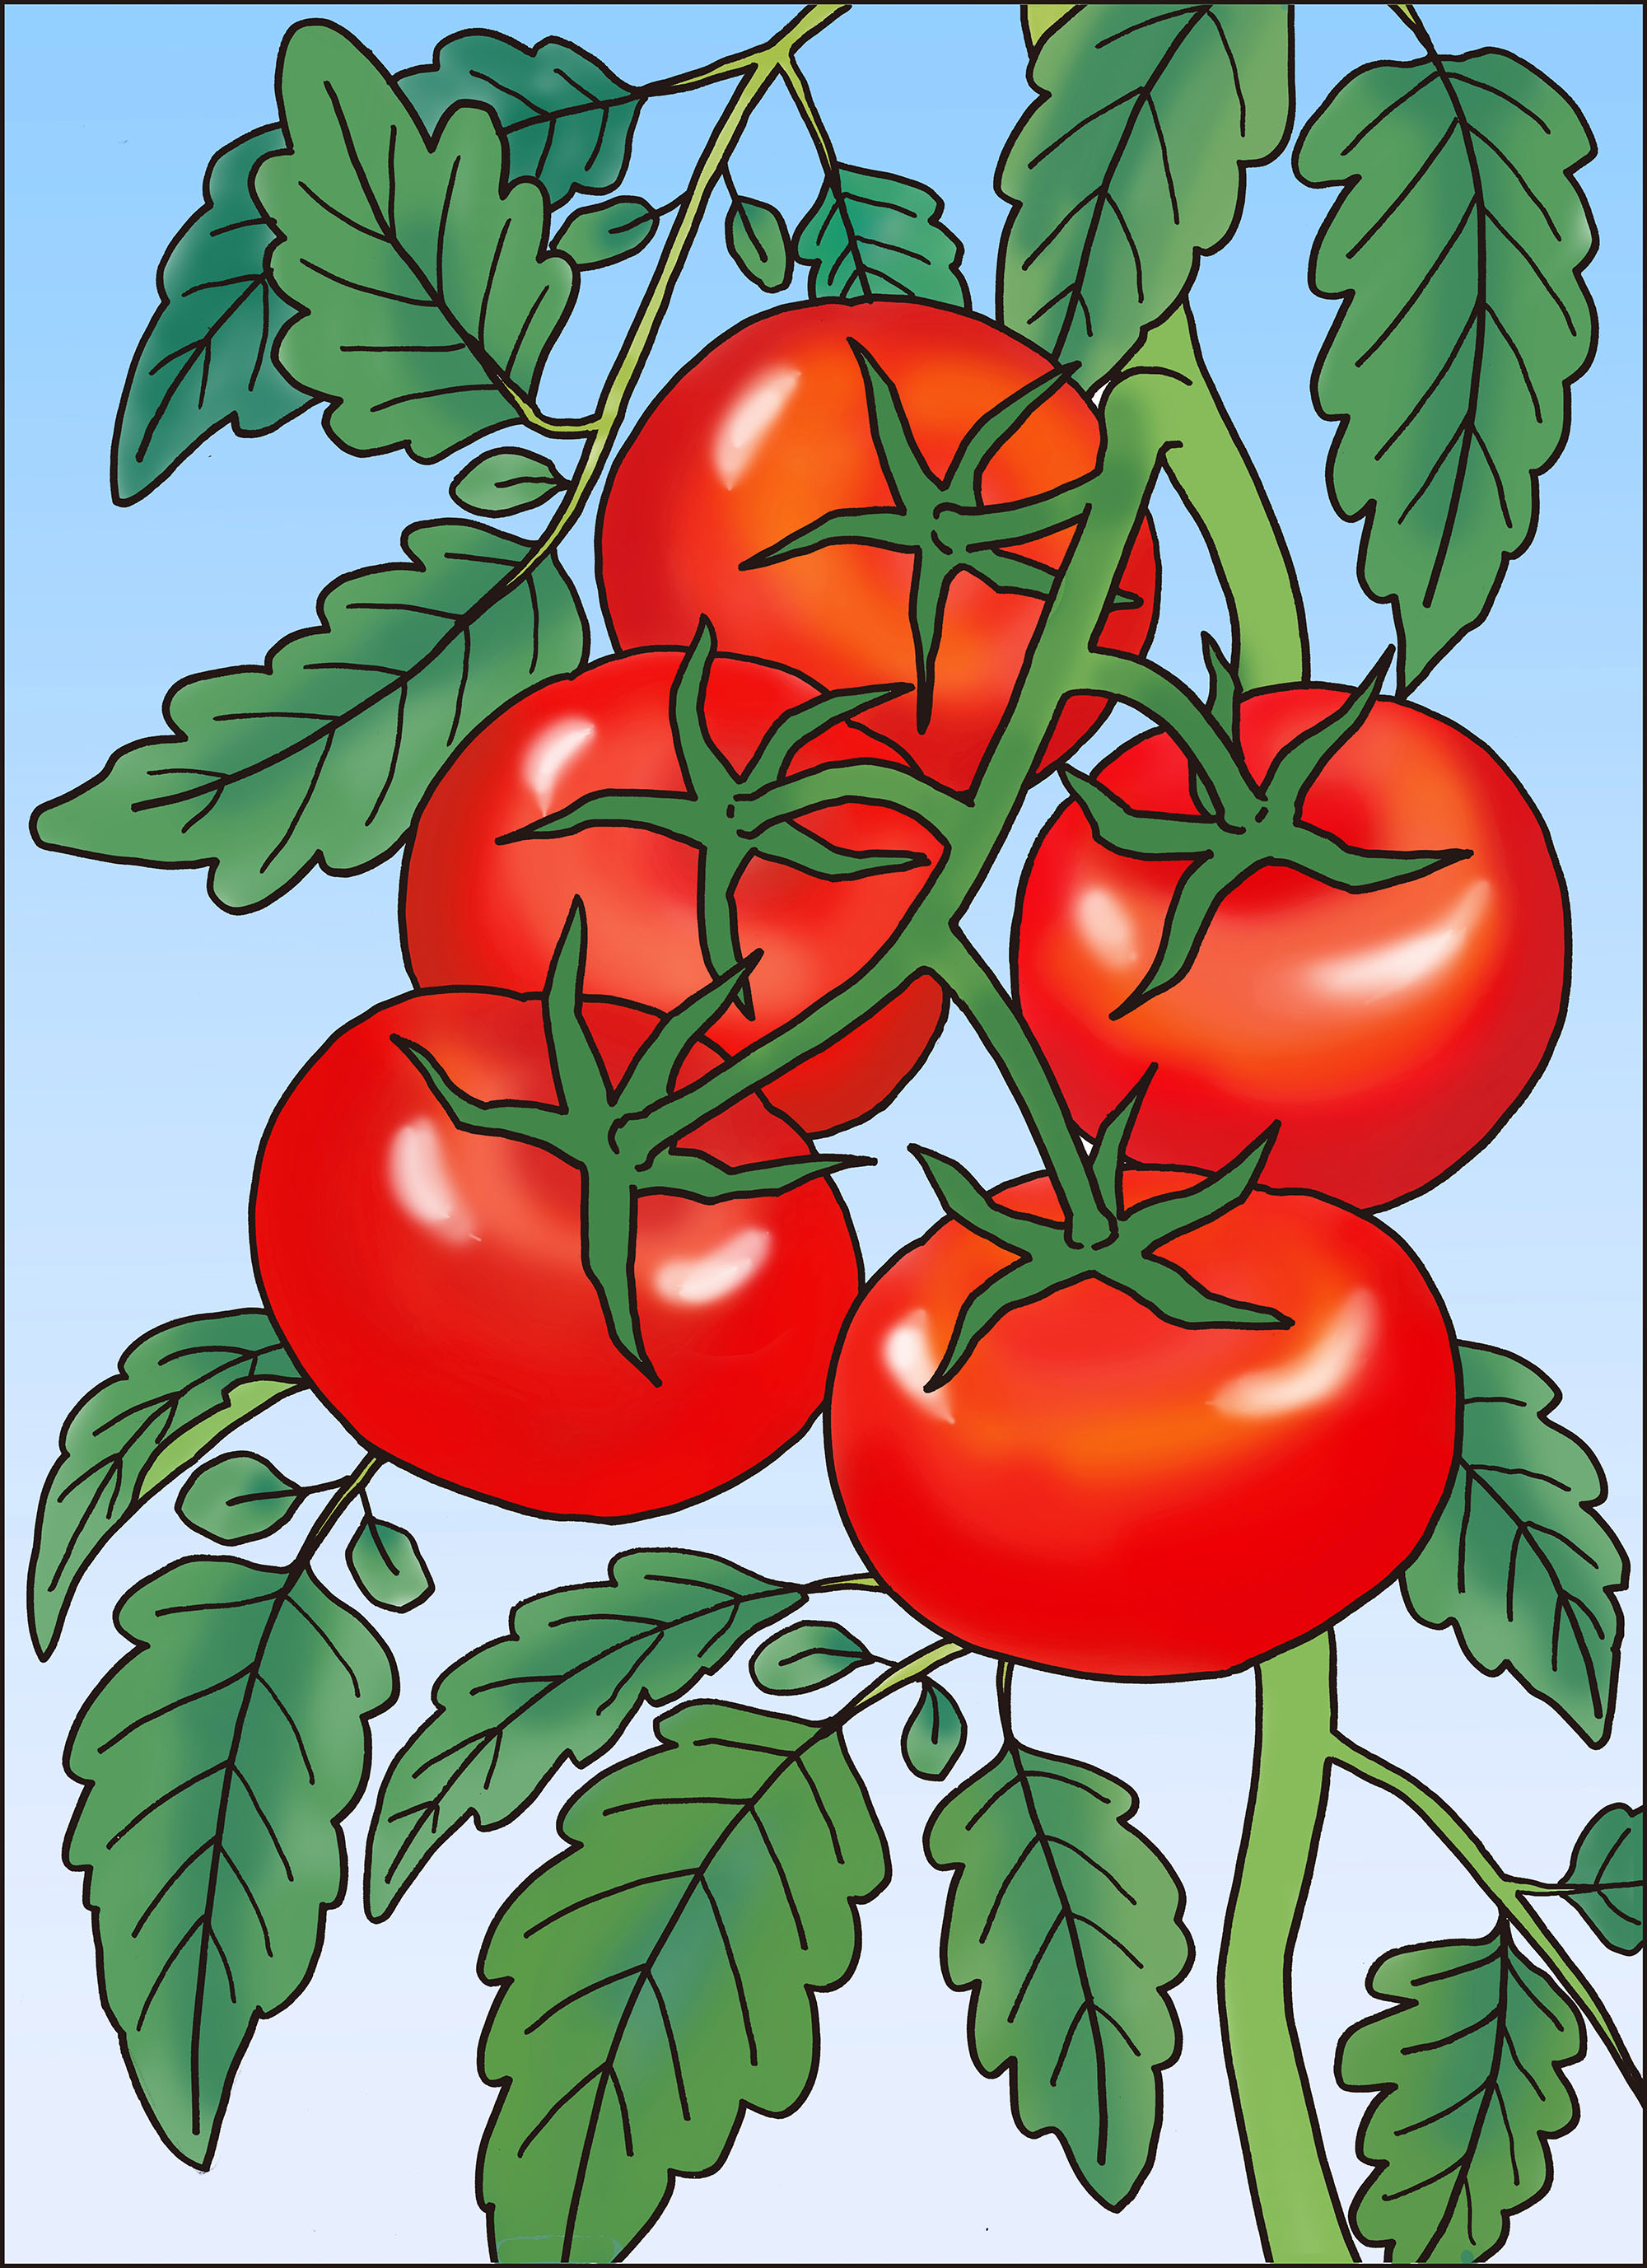 高齢者レク素材 畑のトマト 定番塗り絵 介護レク広場 レク素材やレクネタ 企画書 の無料ダウンロード